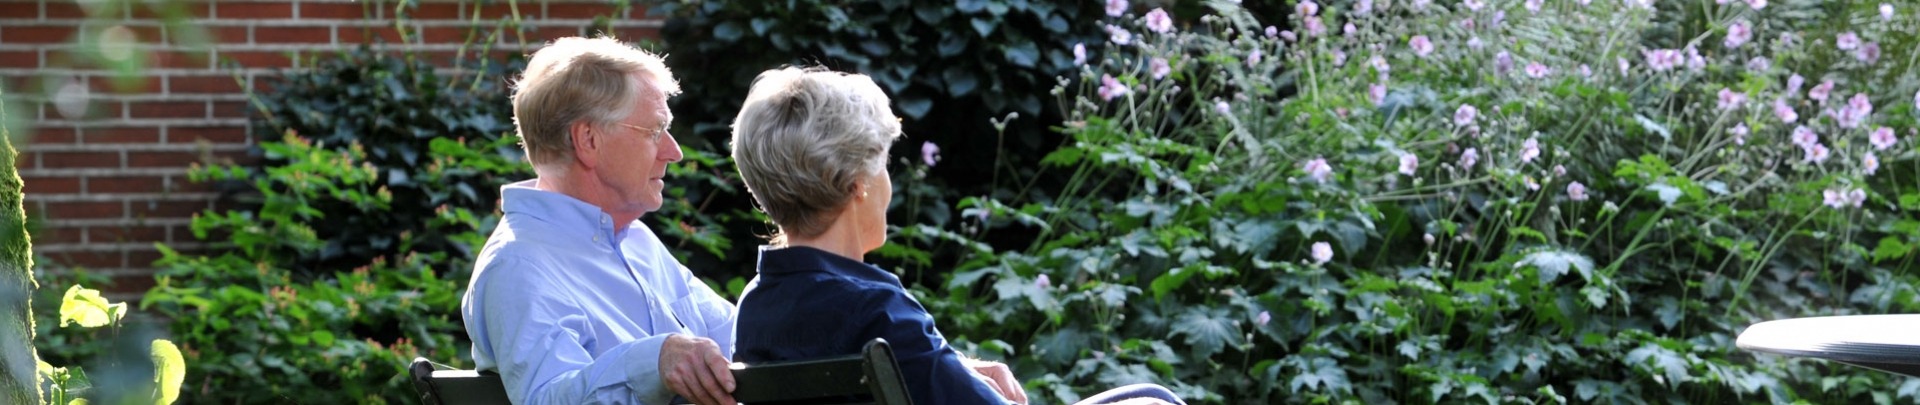 Een ouder stel zit buiten in de tuin op een bankje en ze kijken van zich af